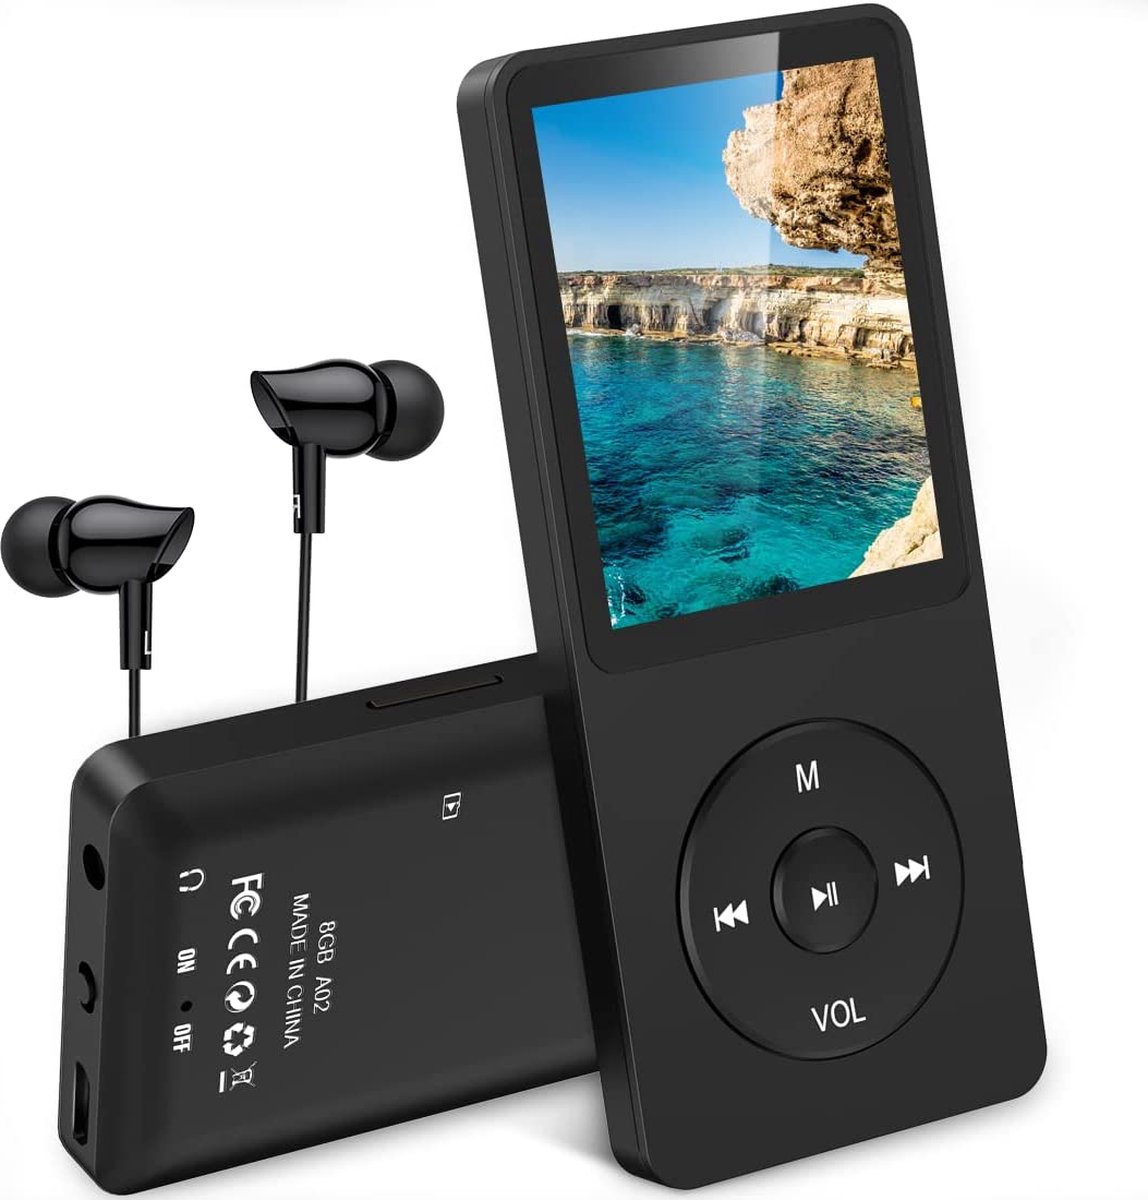 80Go Lecteur MP3 MP4 Bluetooth WiFi, AGPTEK 3,5 Écran Tactile MP3